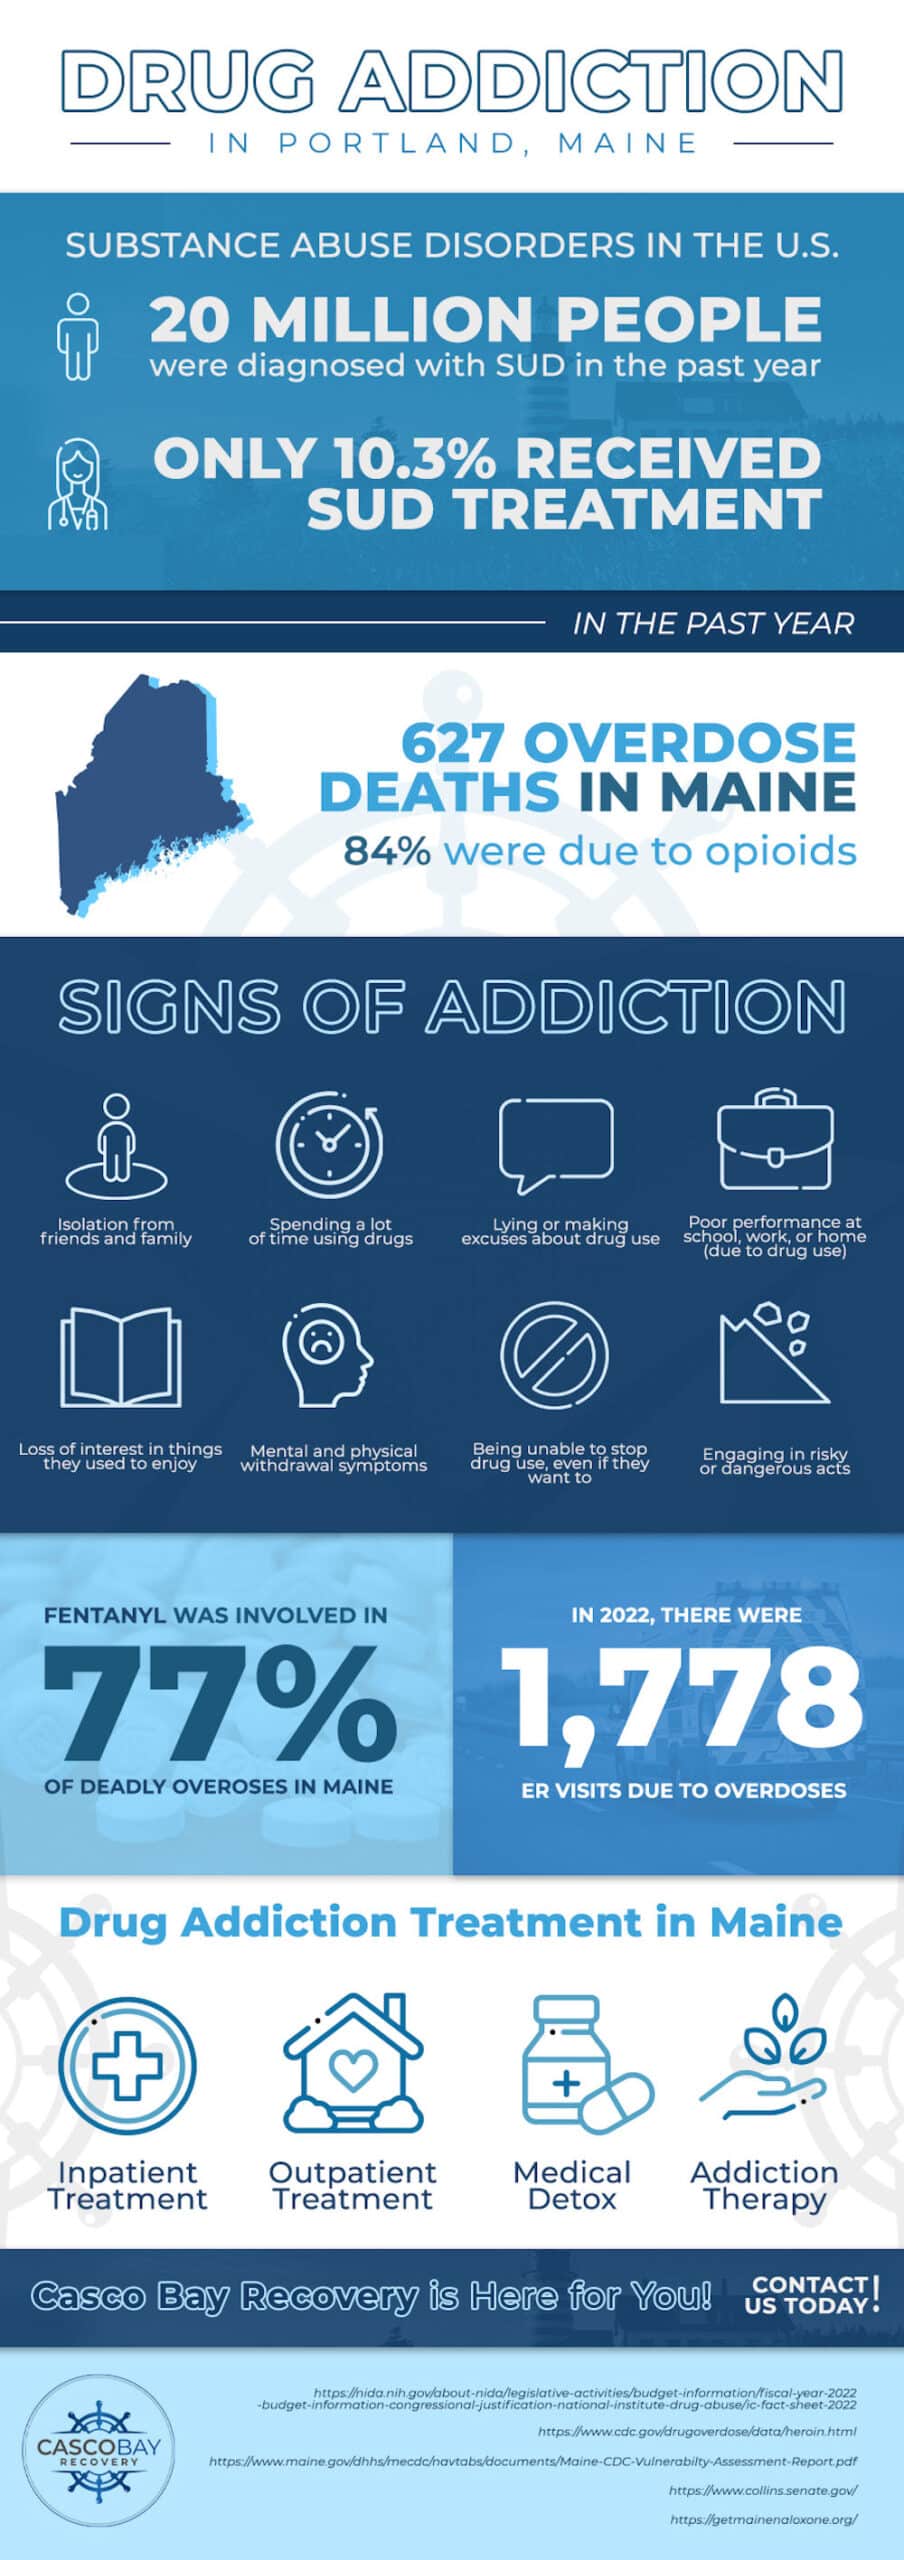 Drug Addiction in Maine